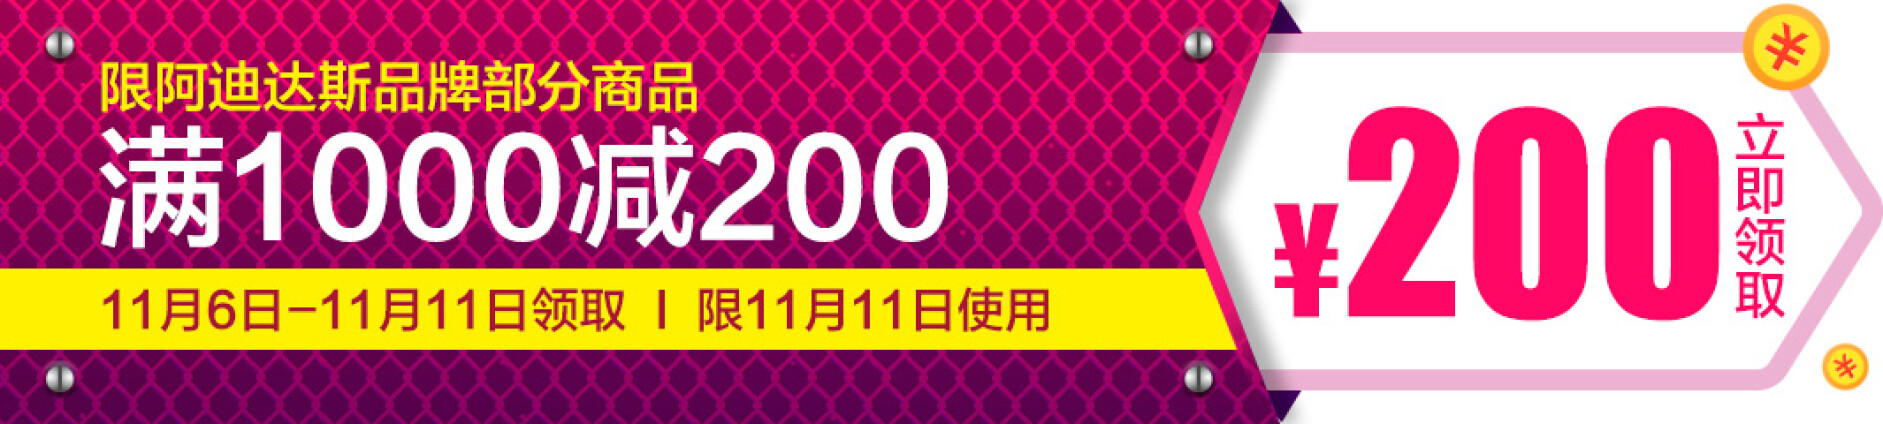 京东商城  阿迪达斯促销  领取满1000减200券+叠加其他满减券